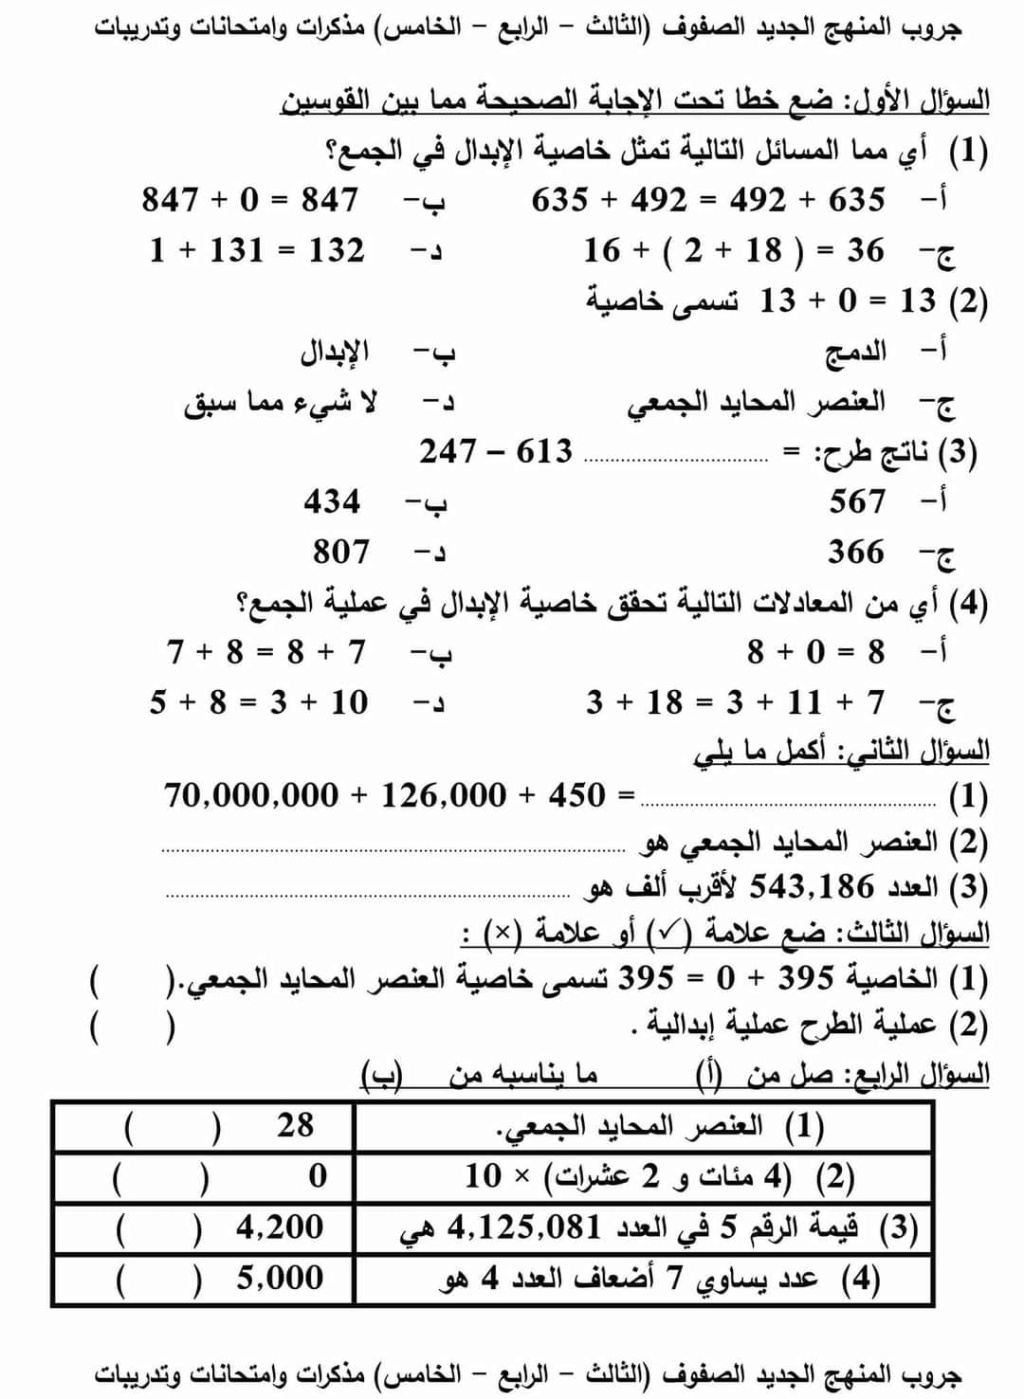 المراجعة النهائية - رياضيات - الصف الرابع والخامس مطابقة لمواصفات الامتحان٢٠٢٢ مع نموذج إجابة  3323